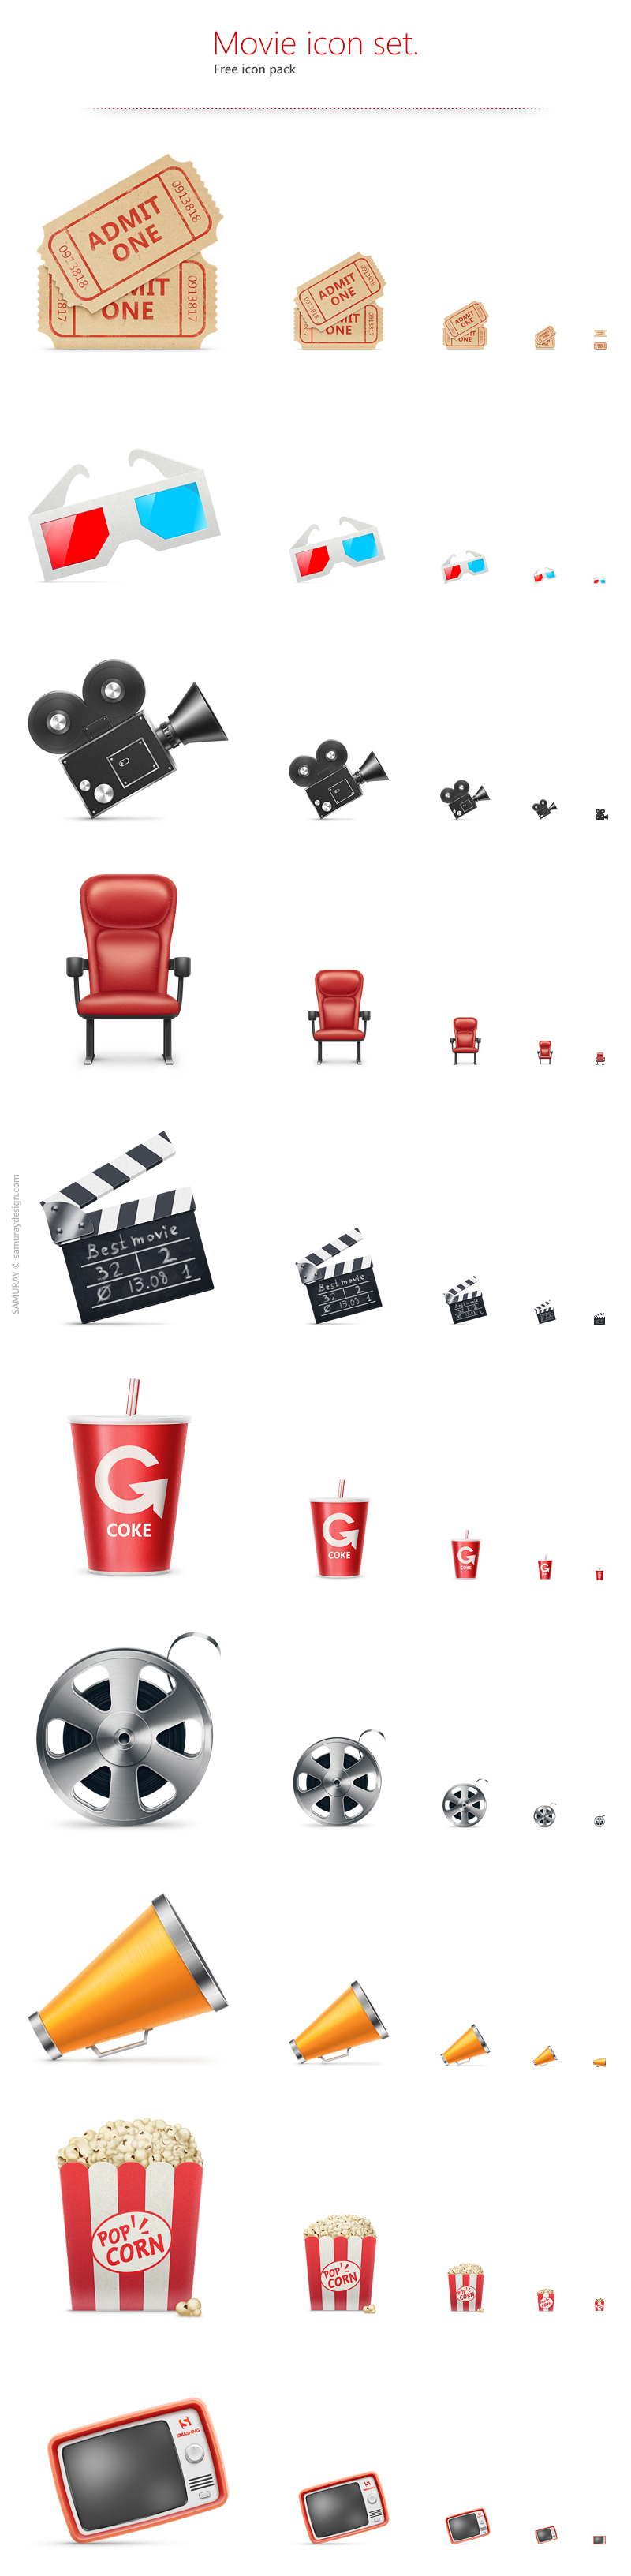 Free Movie Icon Set